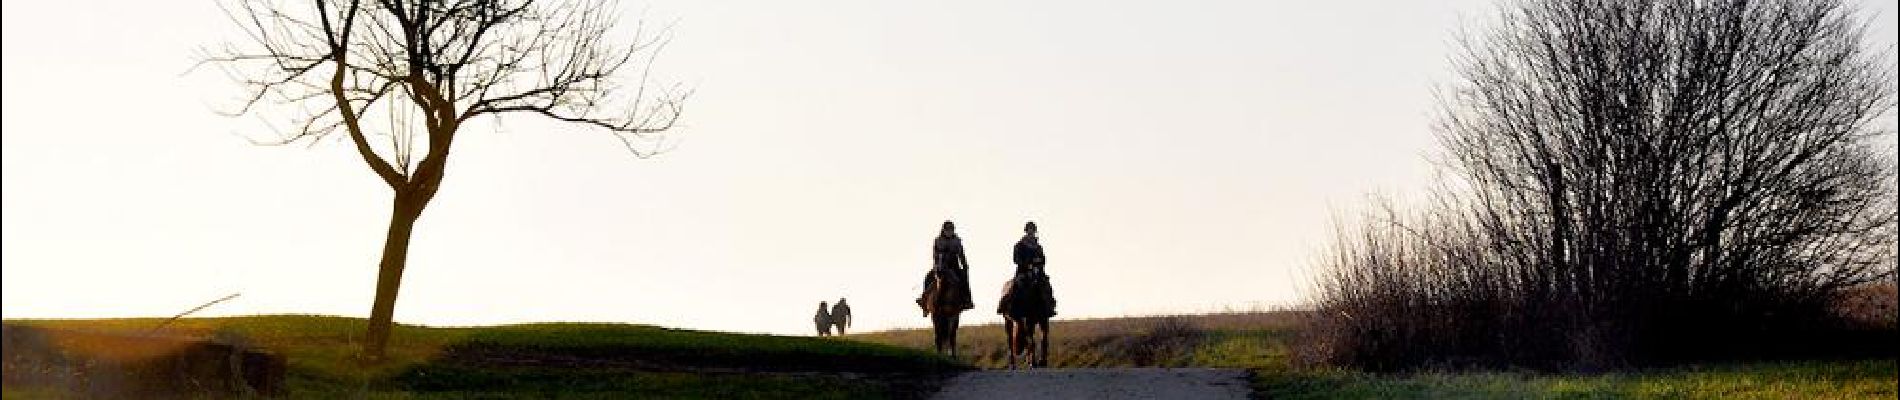 POI Nordheim - Les cavaliers à contre jour - Photo